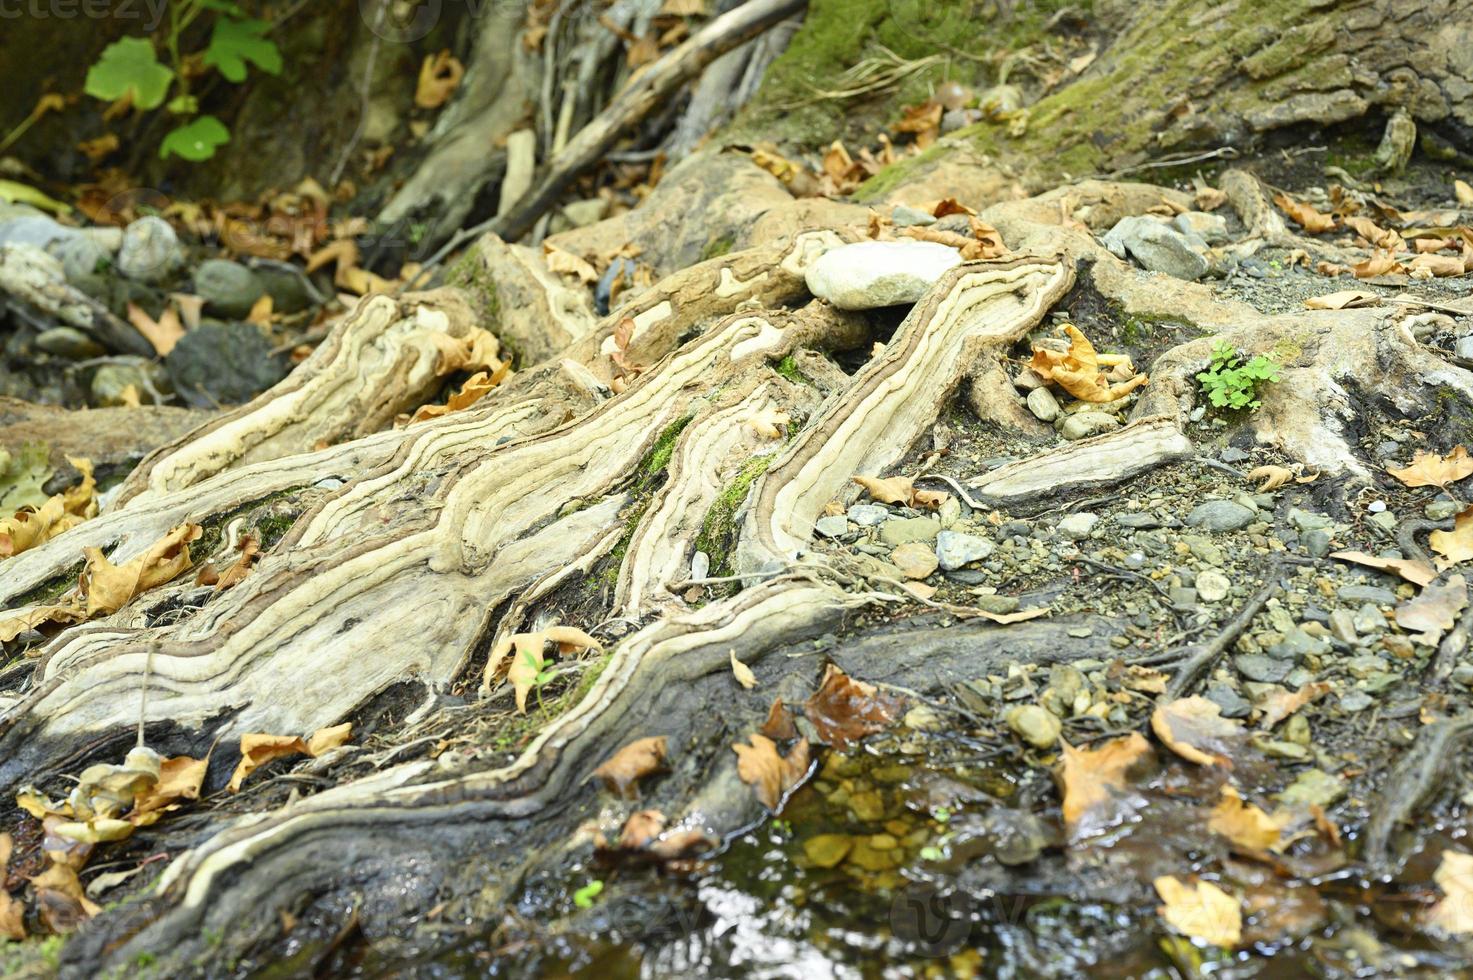 kale wortels van bomen die groeien in rotswanden tussen stenen en water in de herfst foto